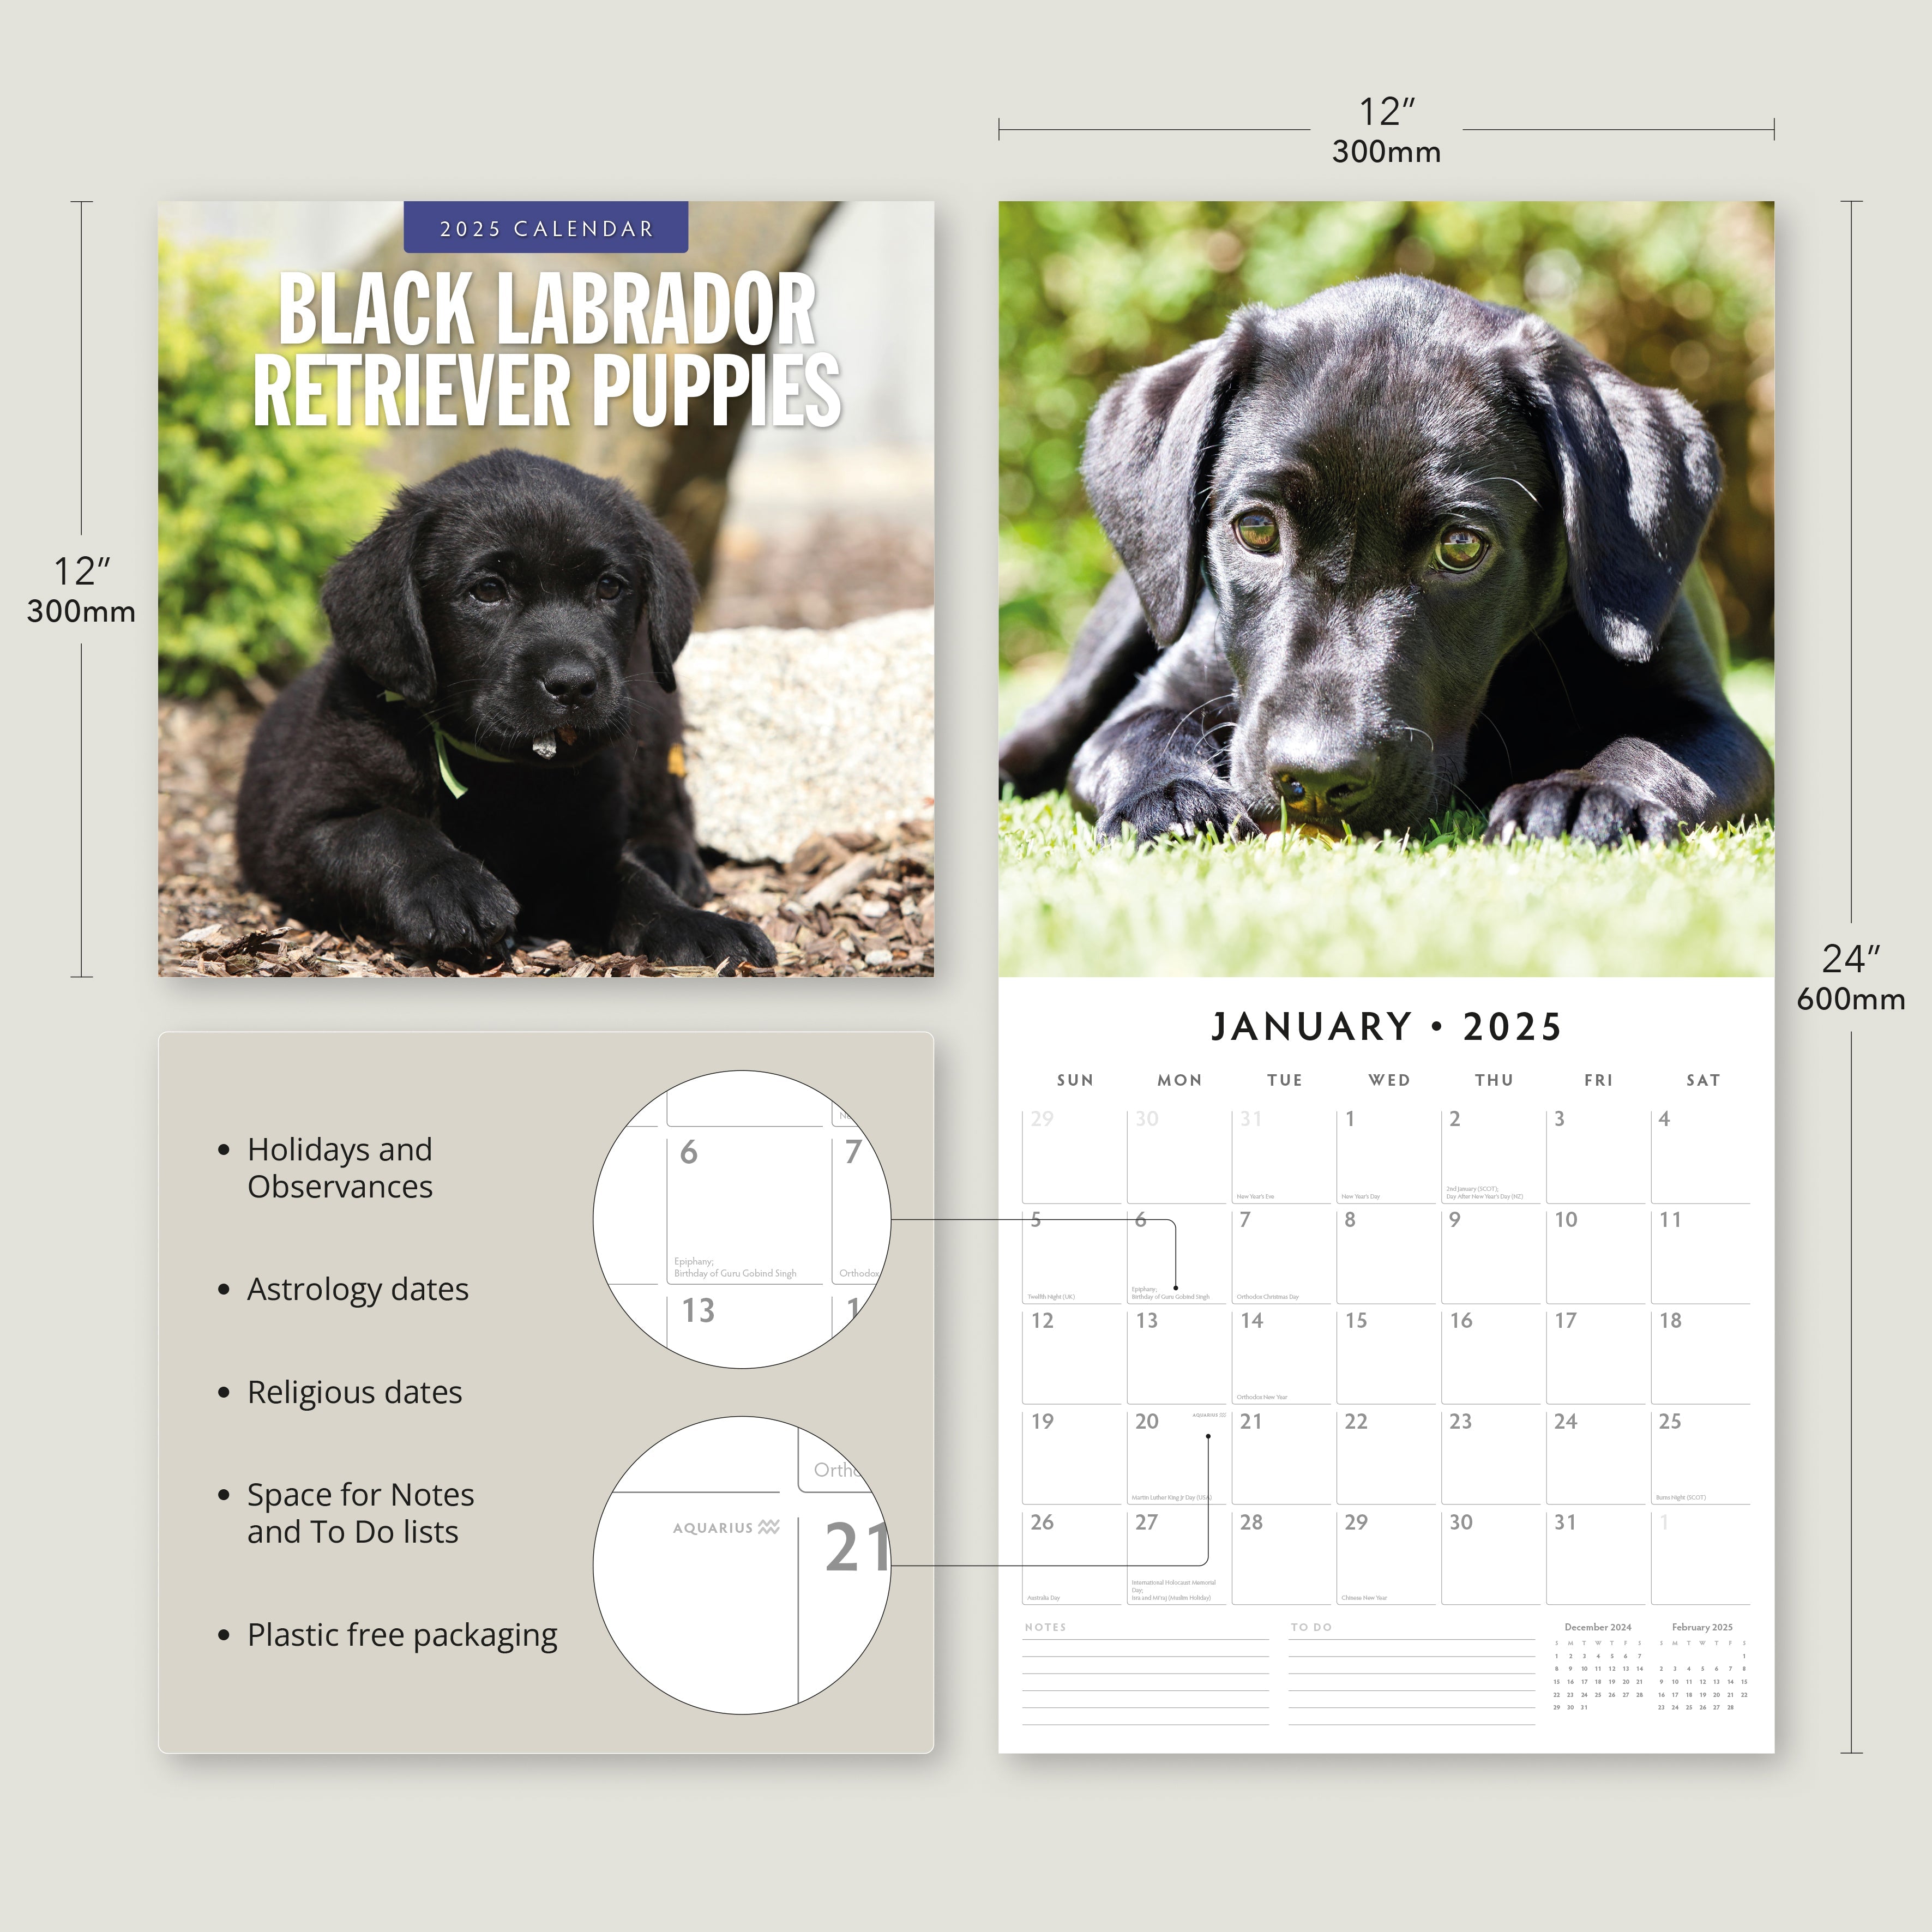 2025 Black Labrador Retriever Puppies - Square Wall Calendar